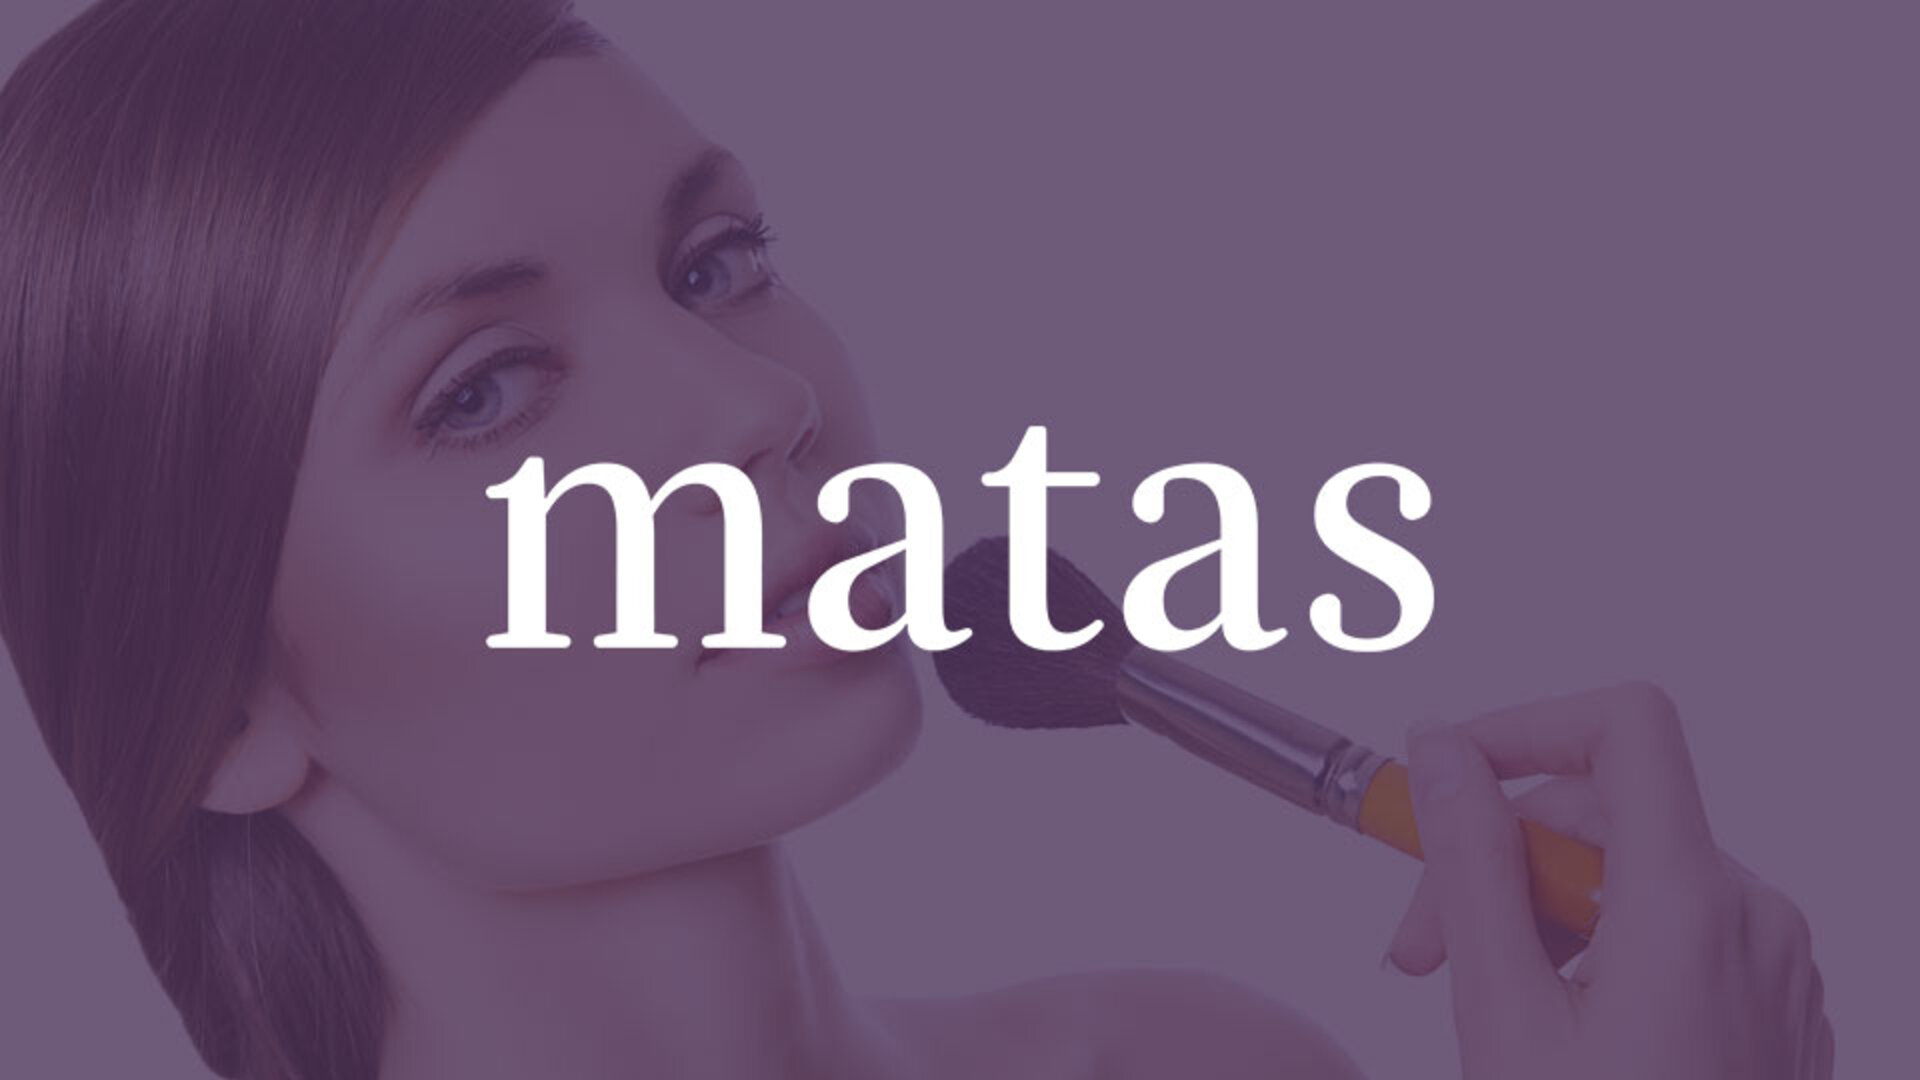 Matas sikrer en unik shoppingoplevelse på tværs af kanaler